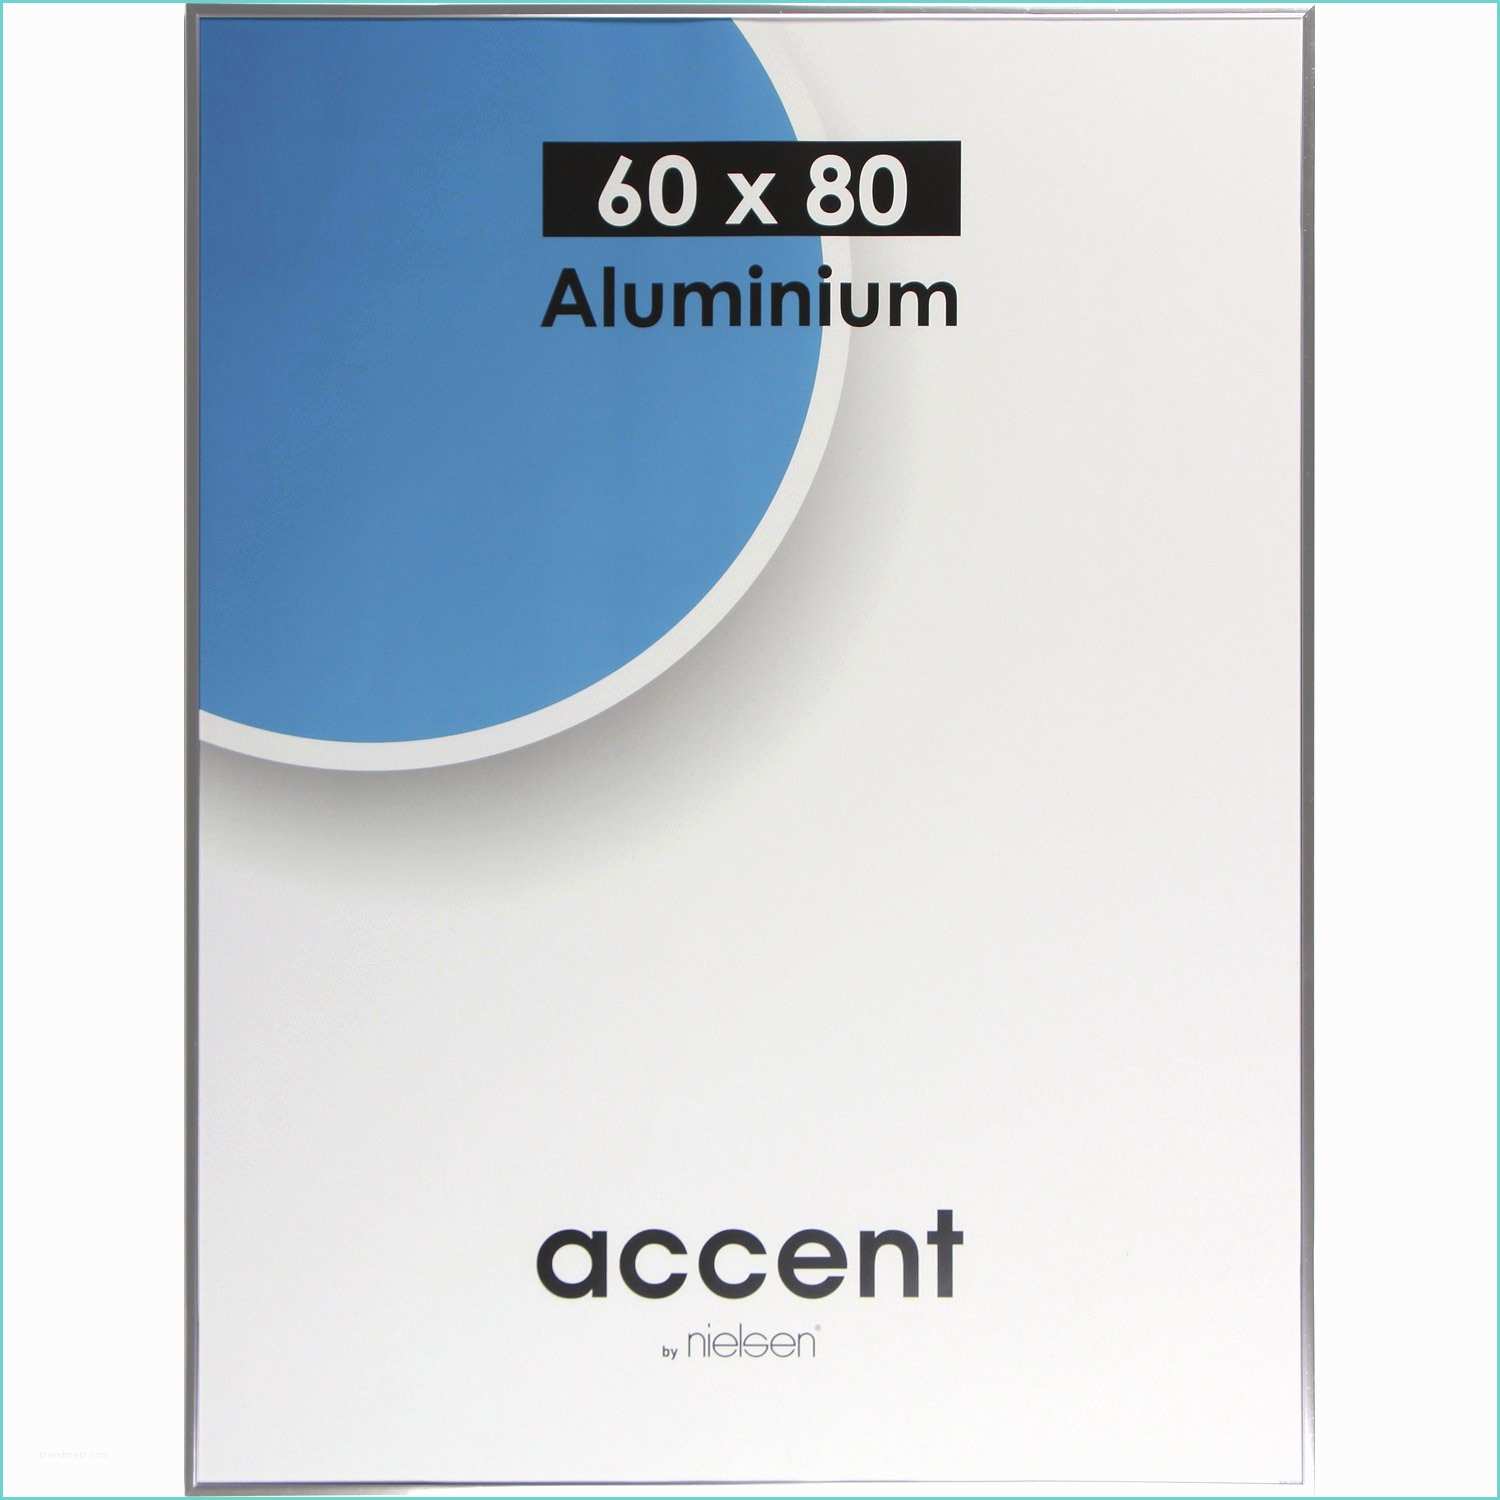 Cadre Aluminium Leroy Merlin Cadre Accent 60 X 80 Cm Argent